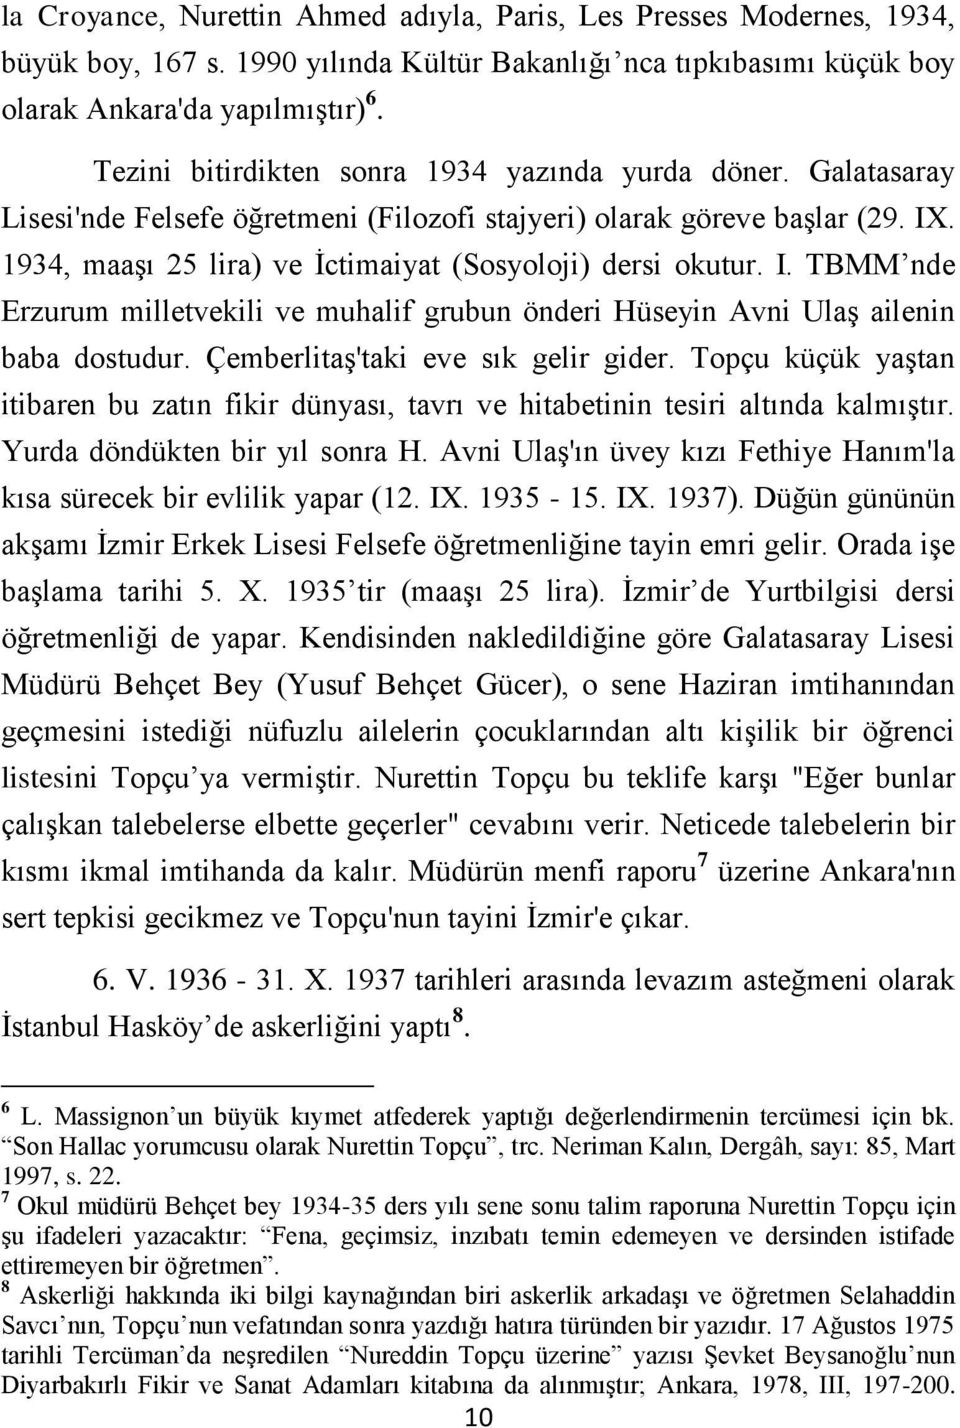 1934, maaşı 25 lira) ve İctimaiyat (Sosyoloji) dersi okutur. I. TBMM nde Erzurum milletvekili ve muhalif grubun önderi Hüseyin Avni Ulaş ailenin baba dostudur. Çemberlitaş'taki eve sık gelir gider.